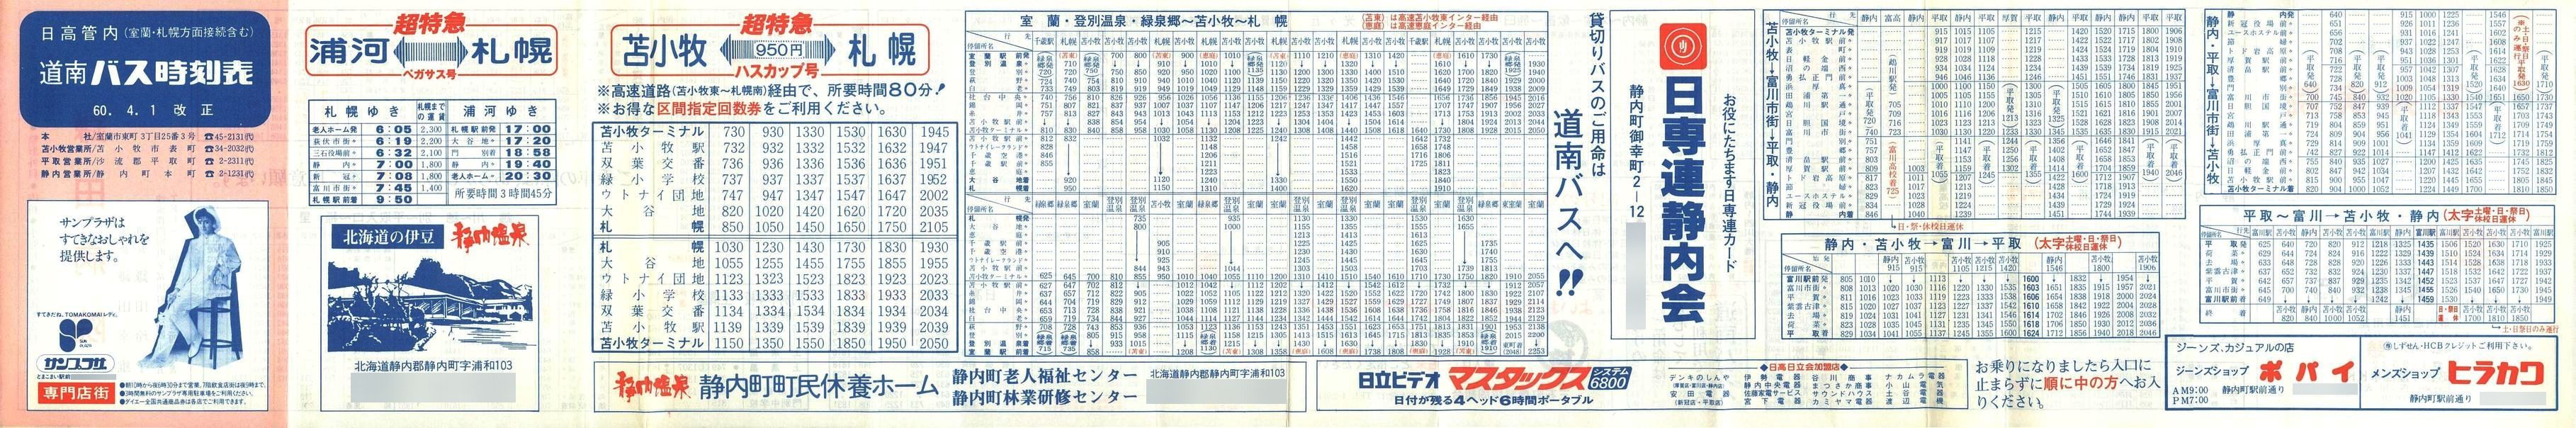 1985-04-01改正_道南バス_日高管内時刻表表面